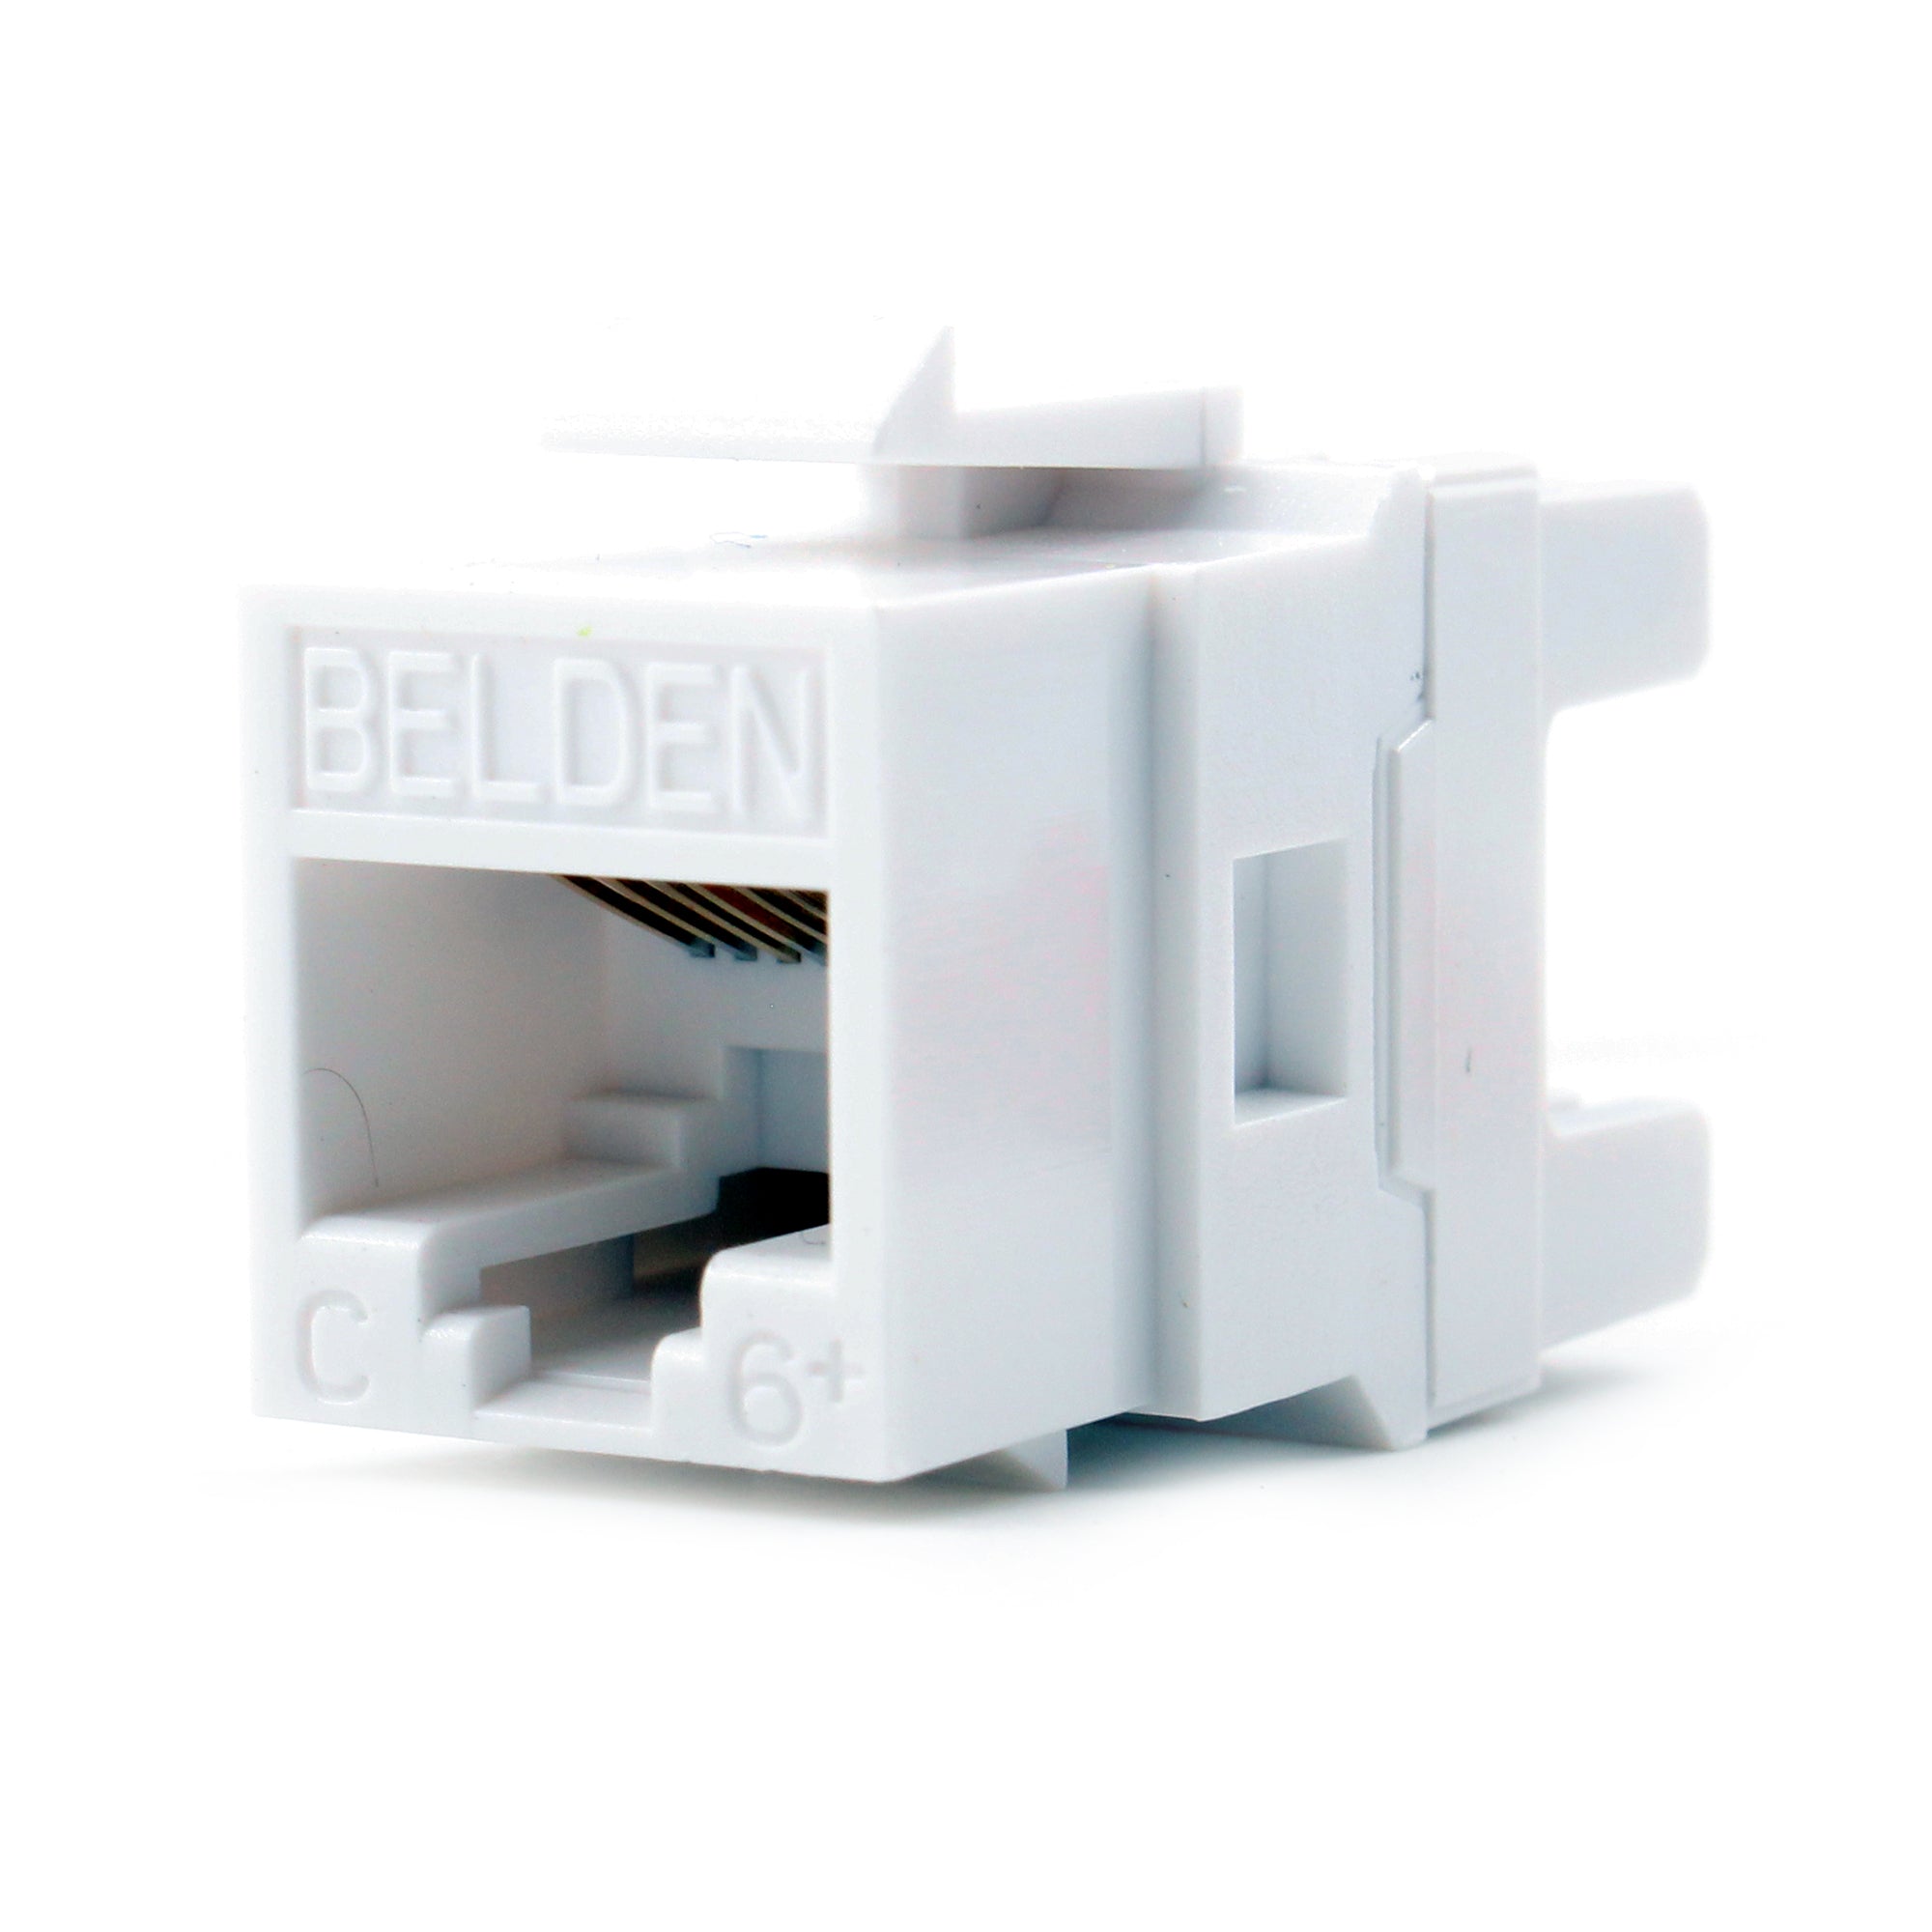 Belden, BELDEN AX101320 CATEGORY-6+ ETHERNET DATA JACK, CAT6+, UTP, RJ45, WHITE